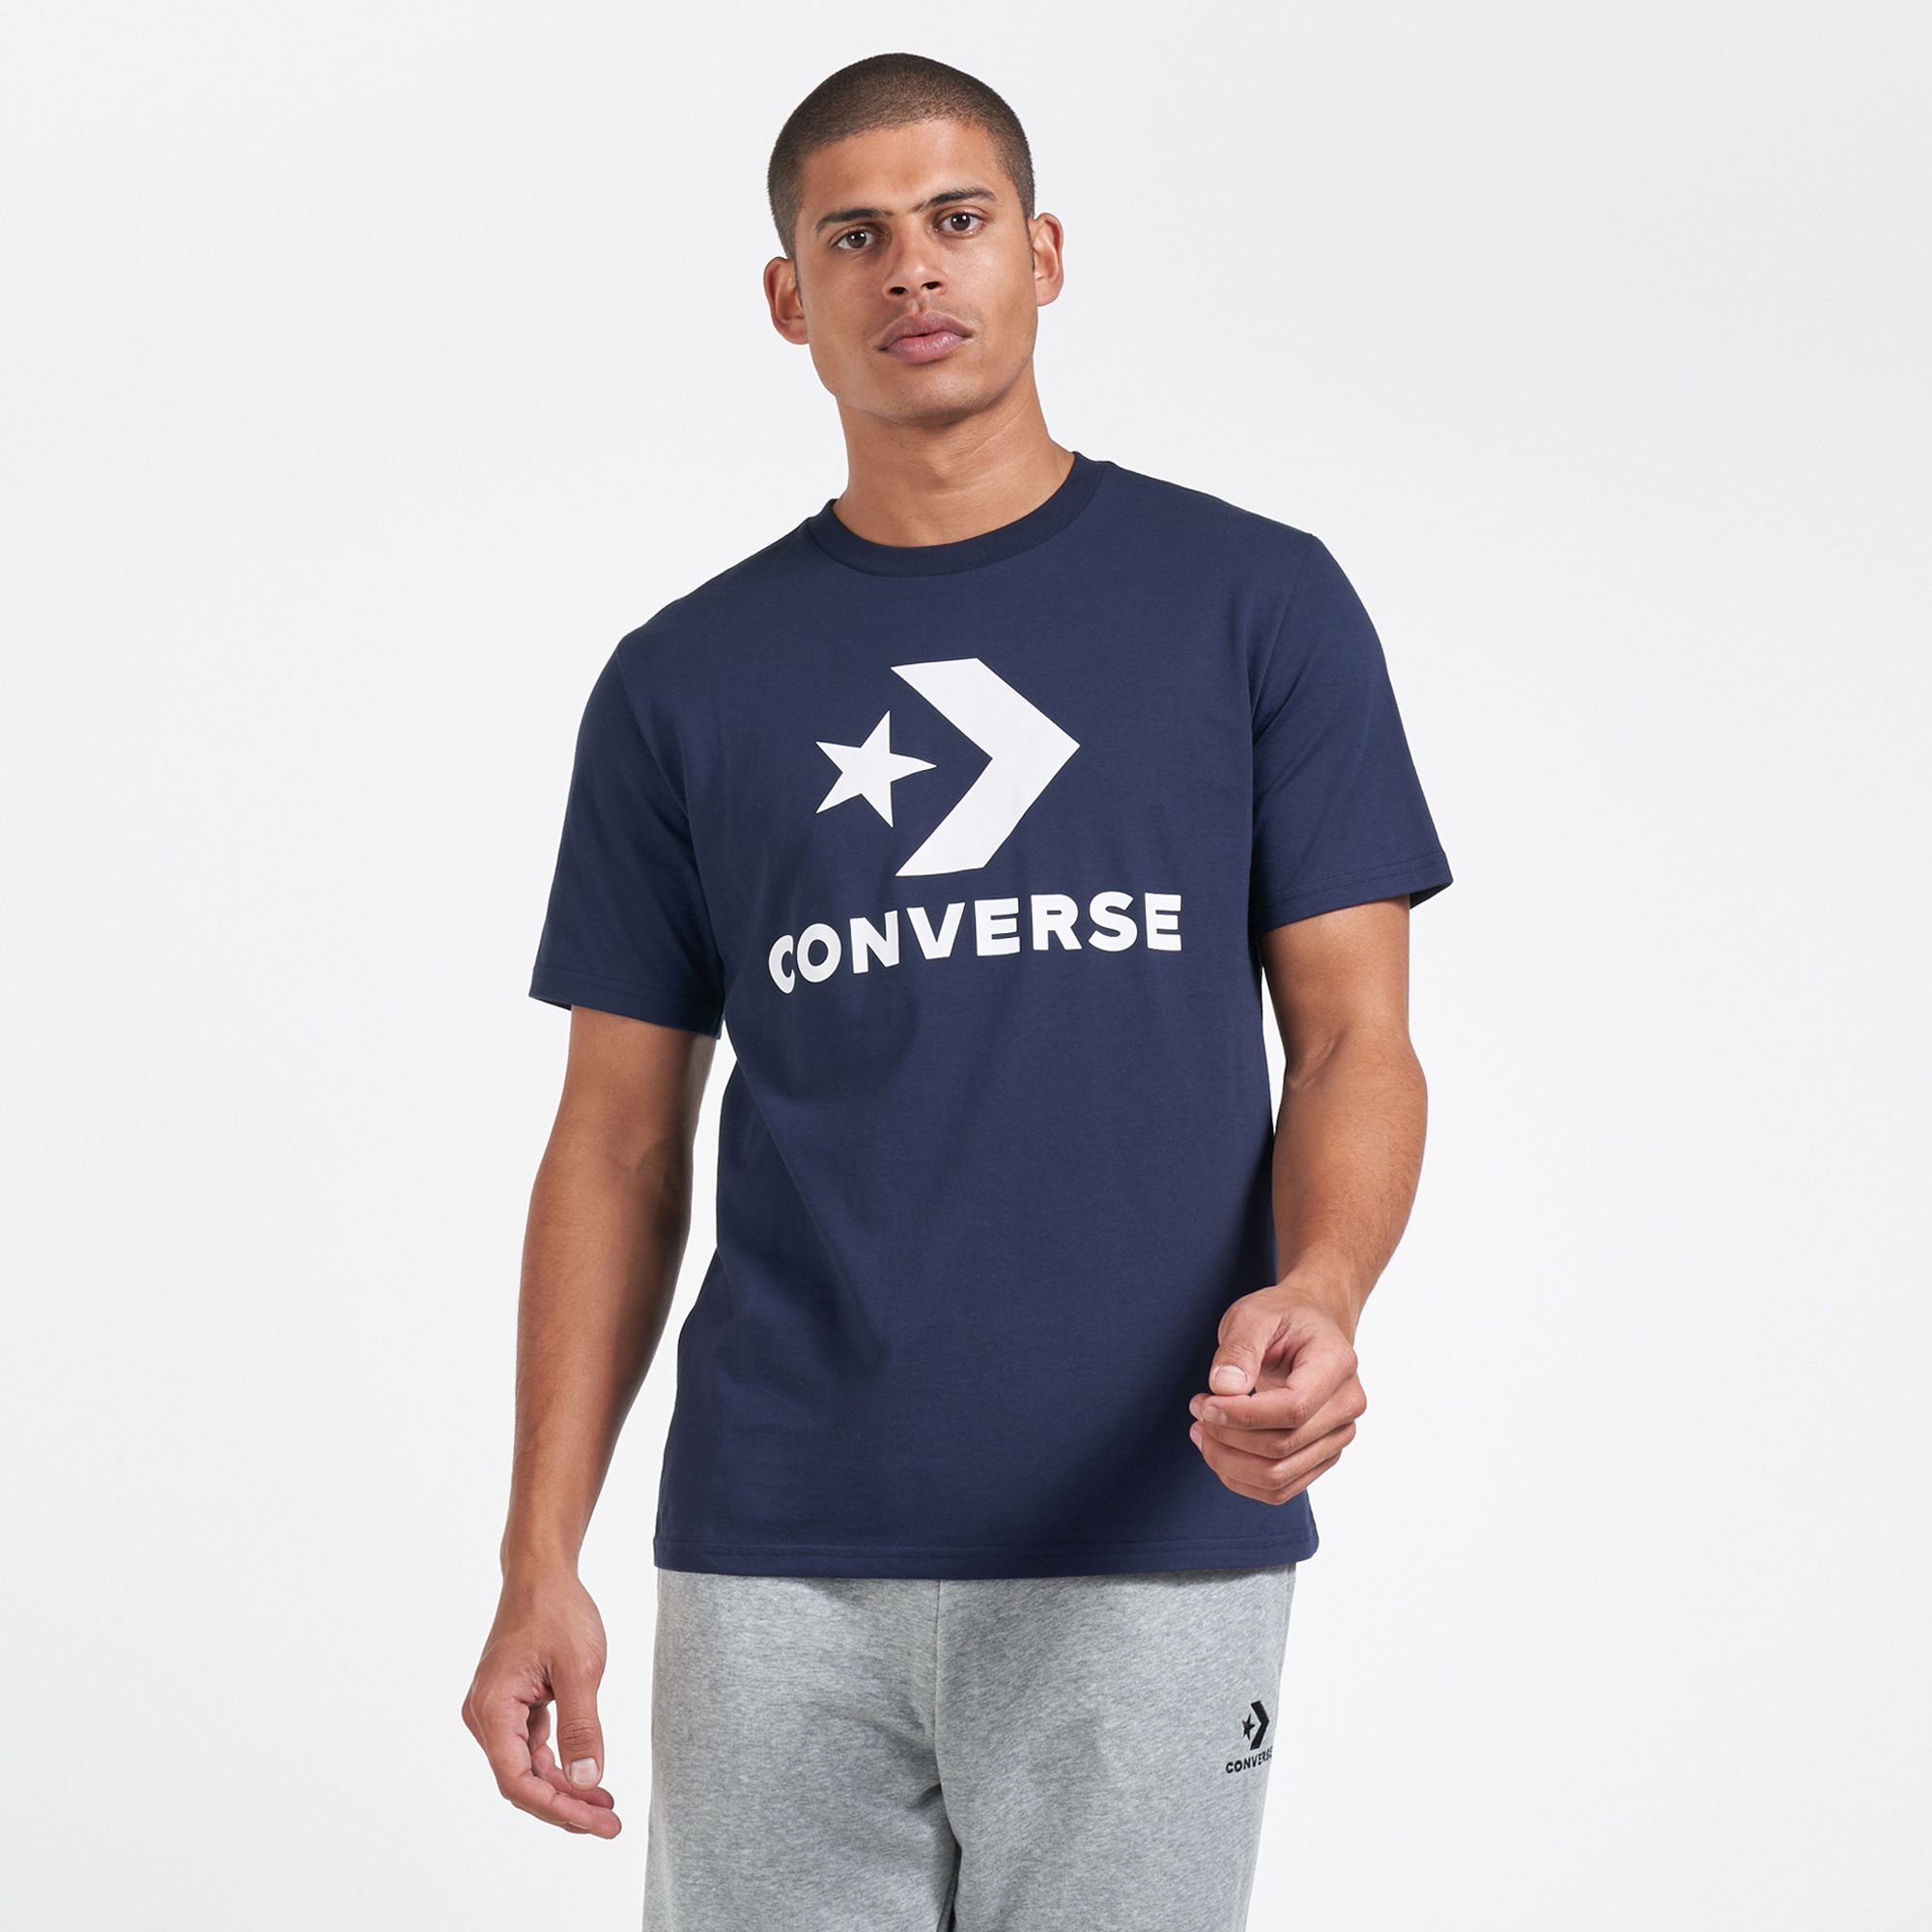 converse t shirt men's sale